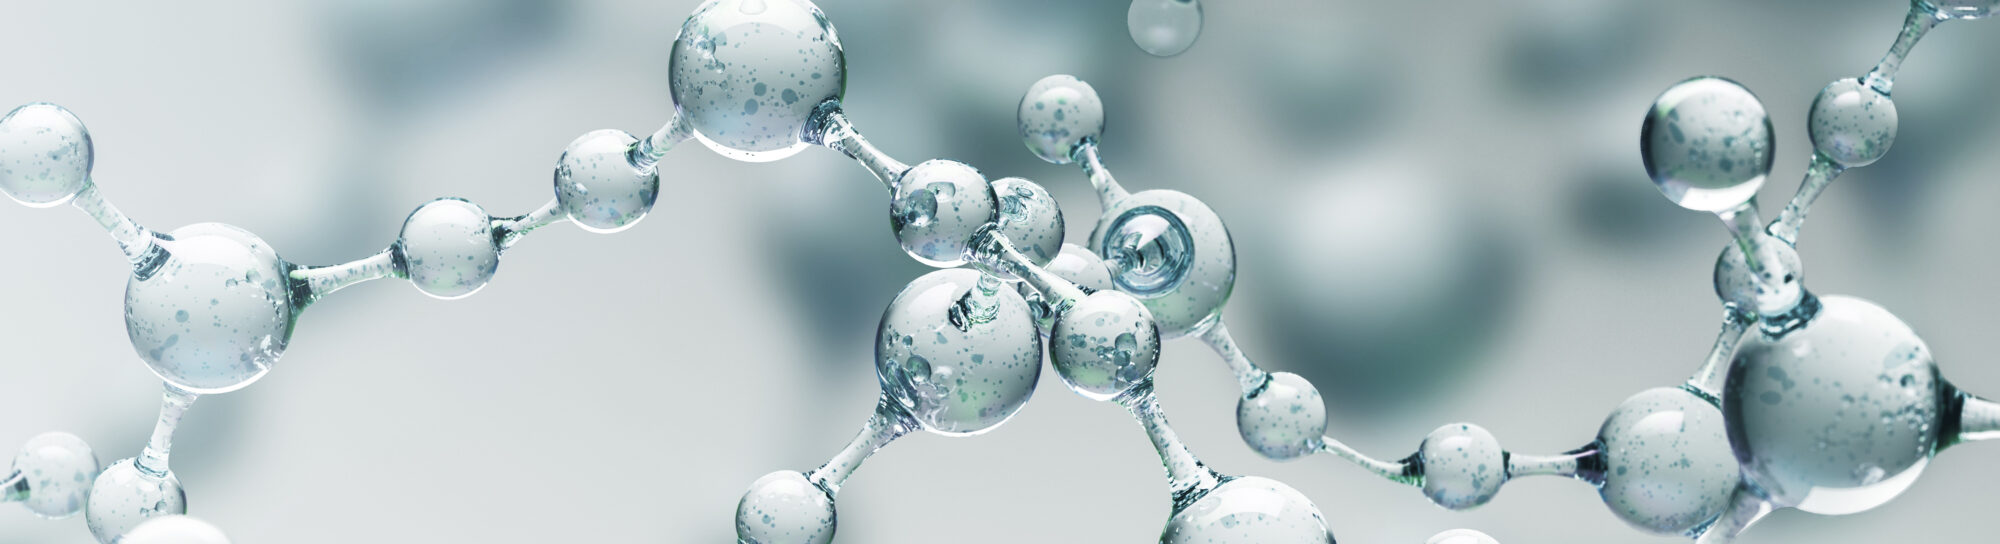 Chemie ist alles – sie schützt auch vor natürlicher Vergiftung